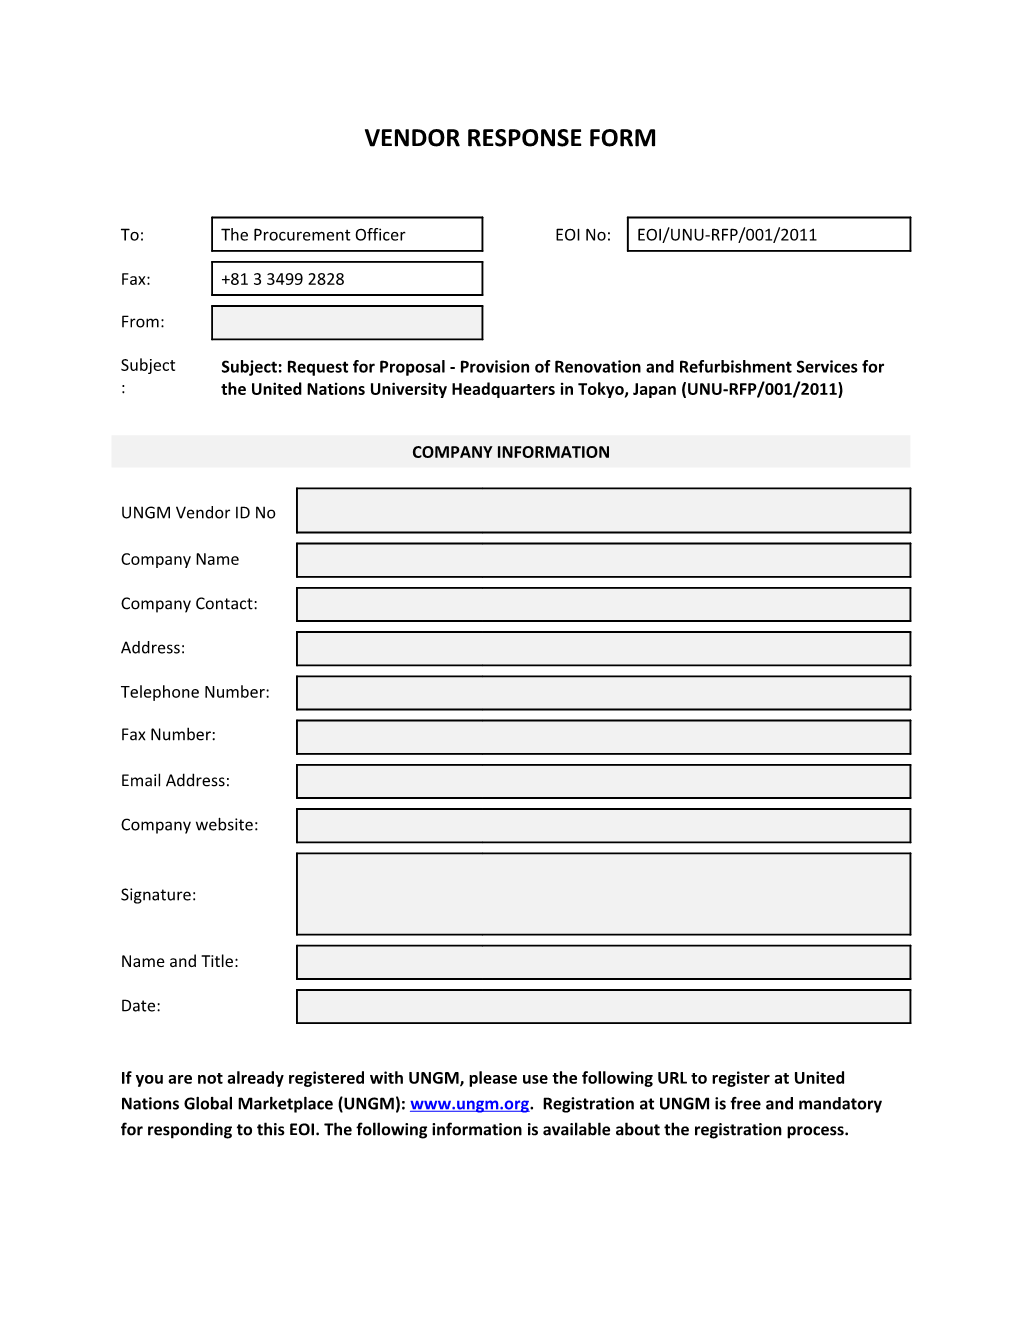 Vendor Response Form